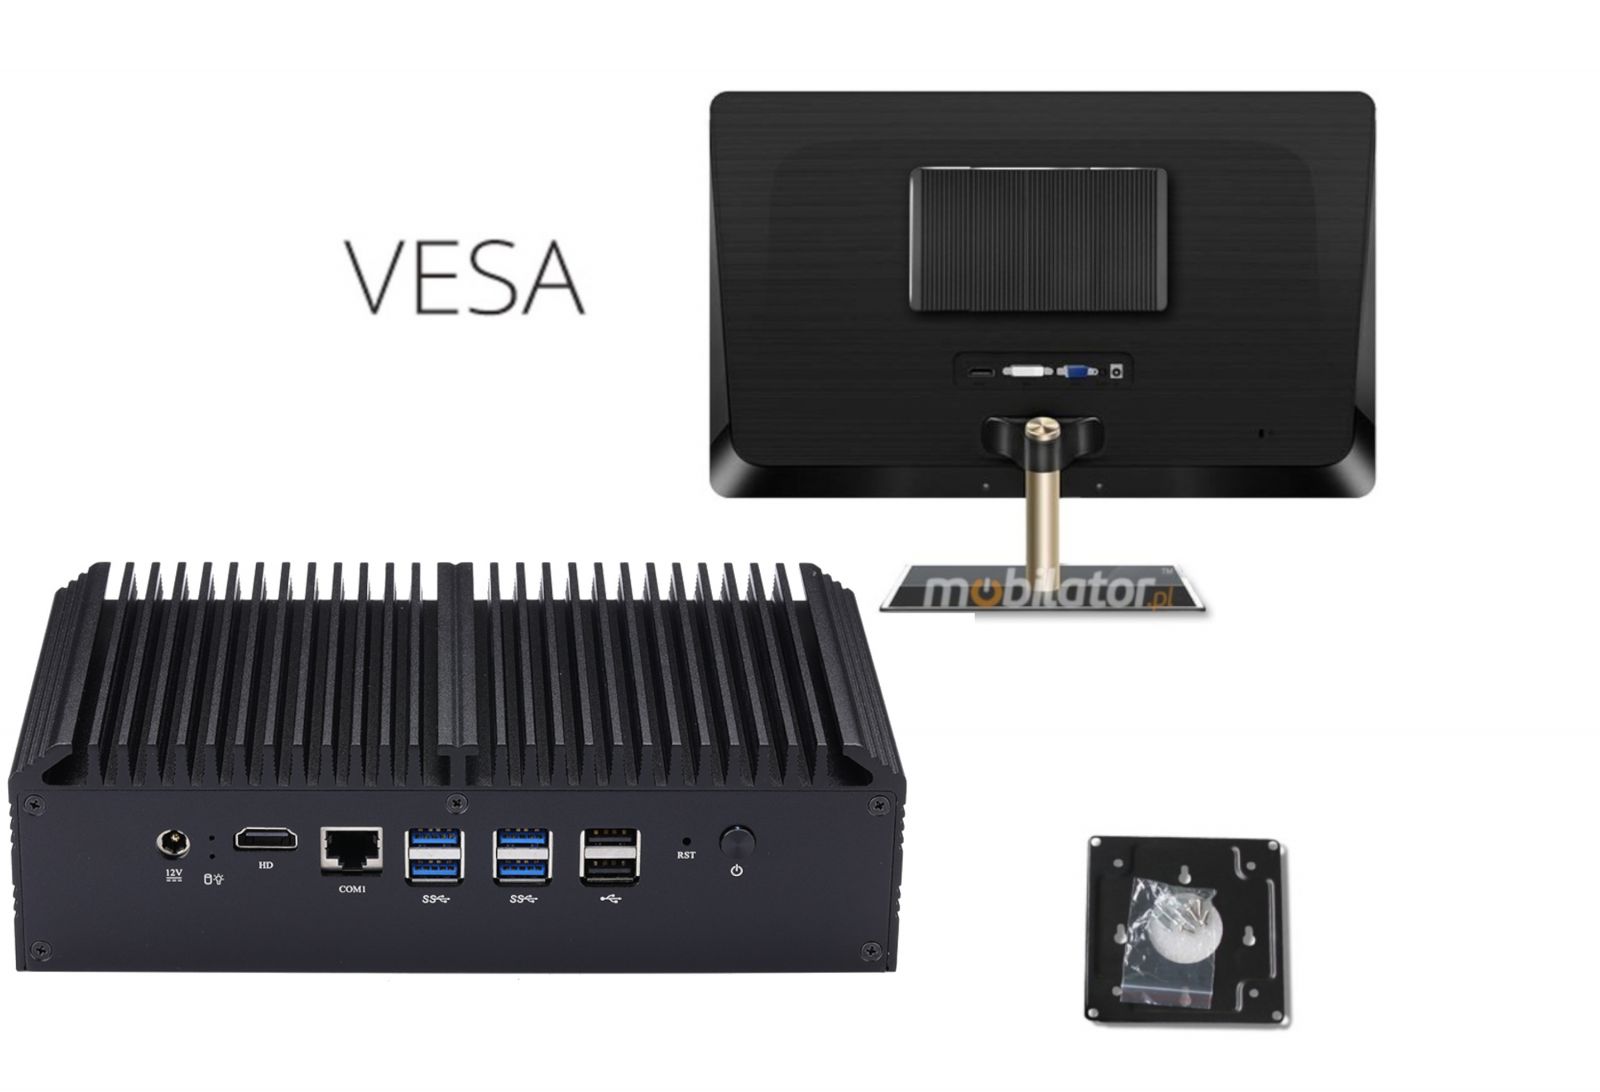 uchwyt VESA umoliwia zamocowanie mBOXa Q838GE na powierzchniach maszyn